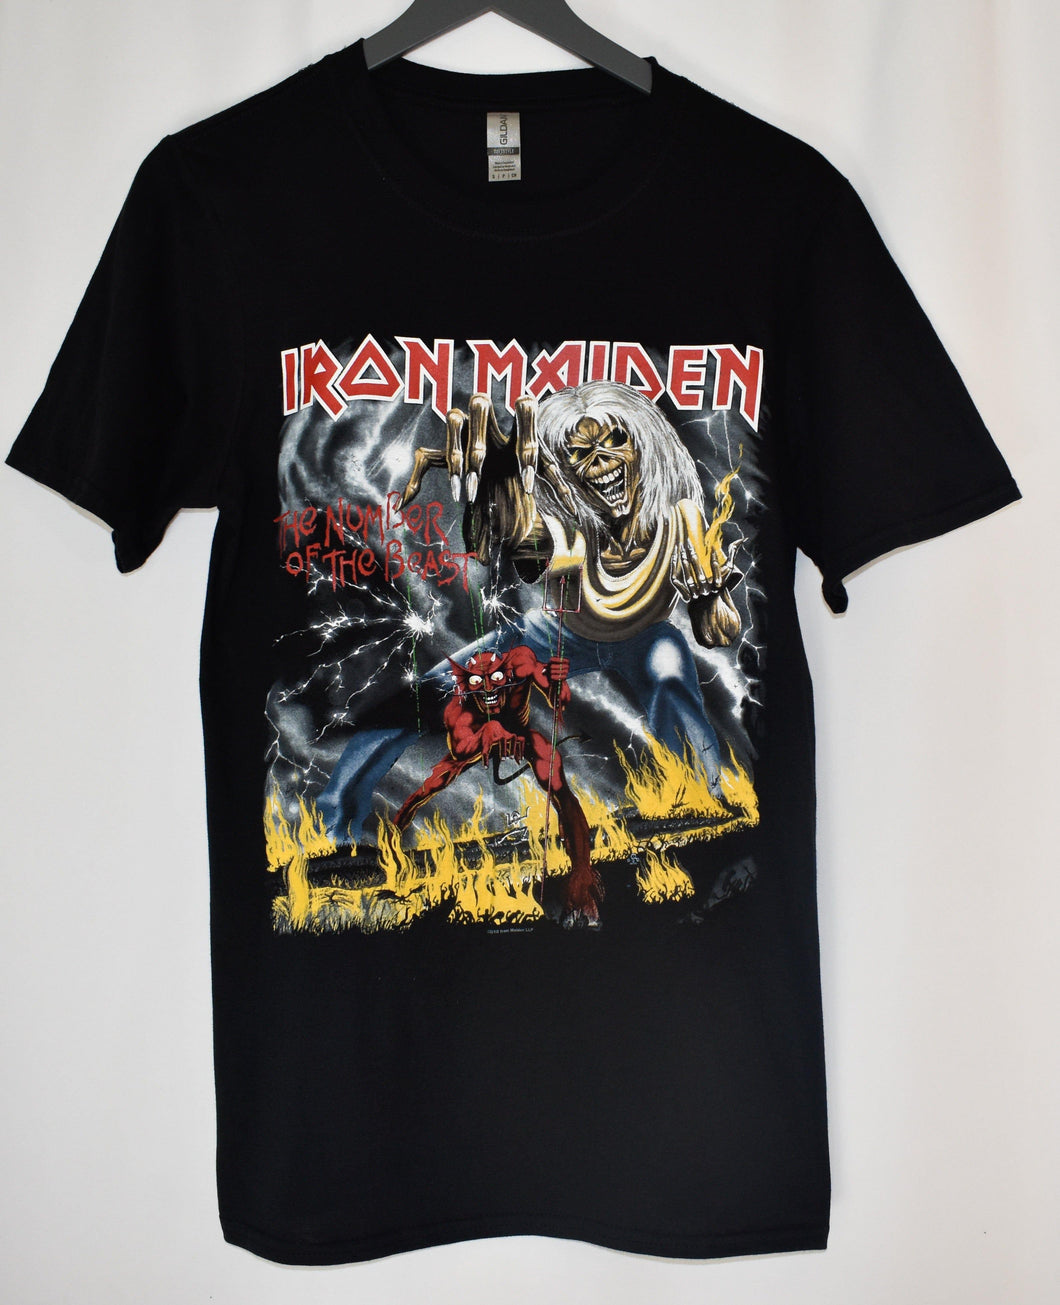 Iron Maiden T Shirt: Eddie's the man. - StitchStreet.com